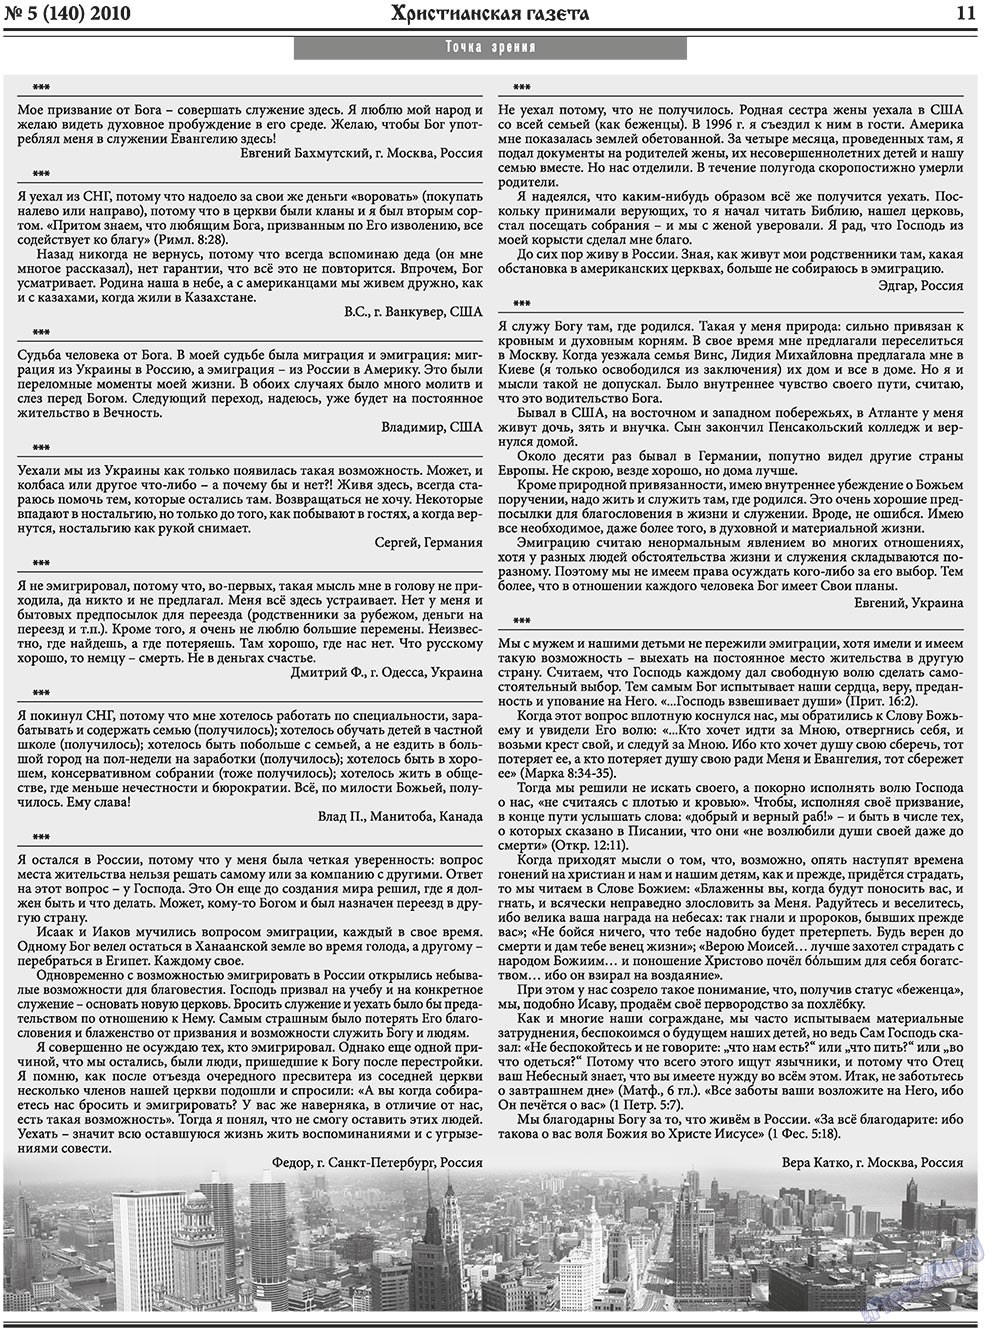 Христианская газета, газета. 2010 №5 стр.11